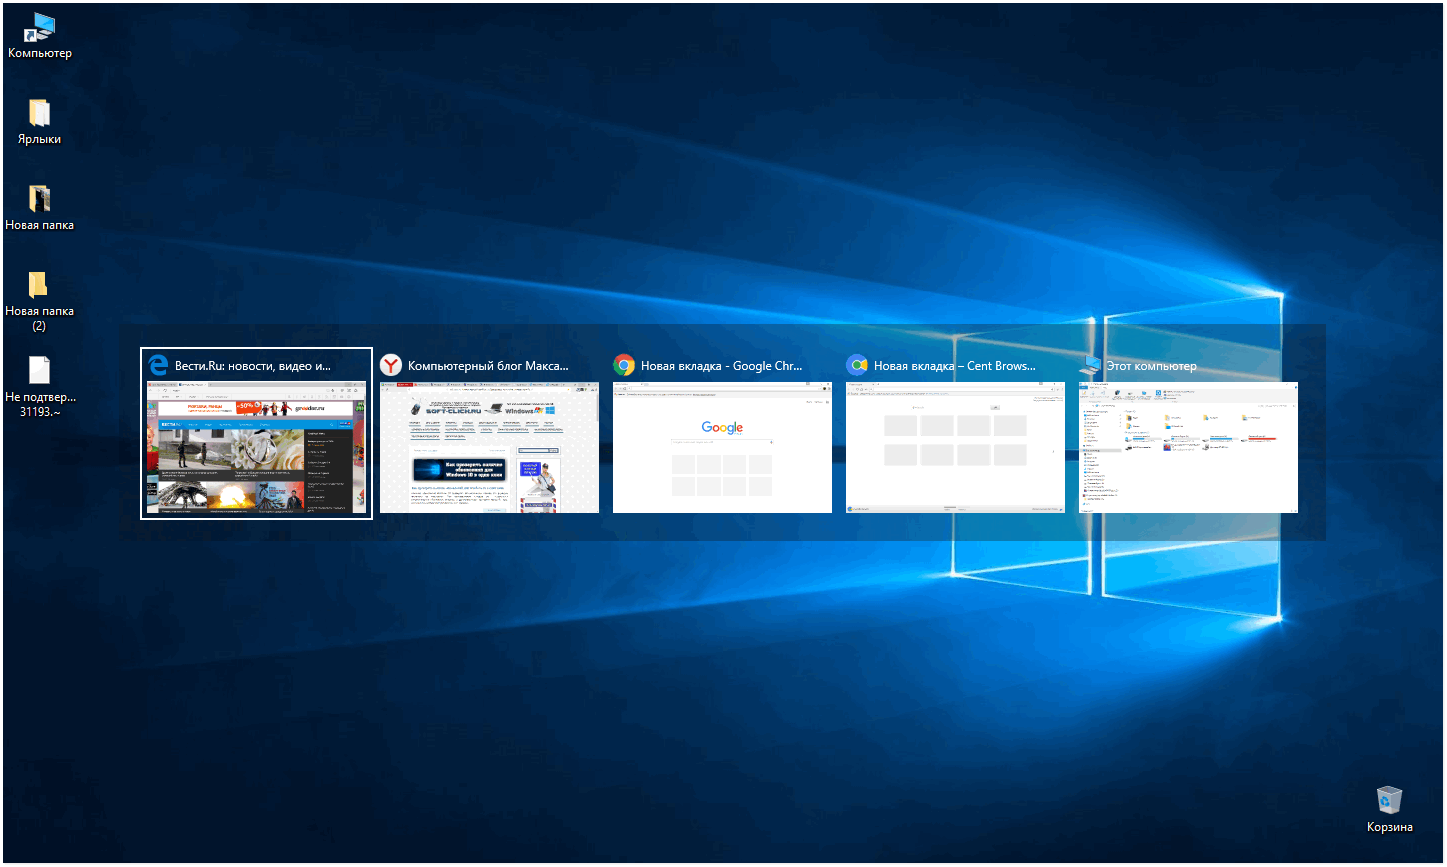 Как изменить прозрачность панели Alt + Tab в Windows 10 - 2 способа